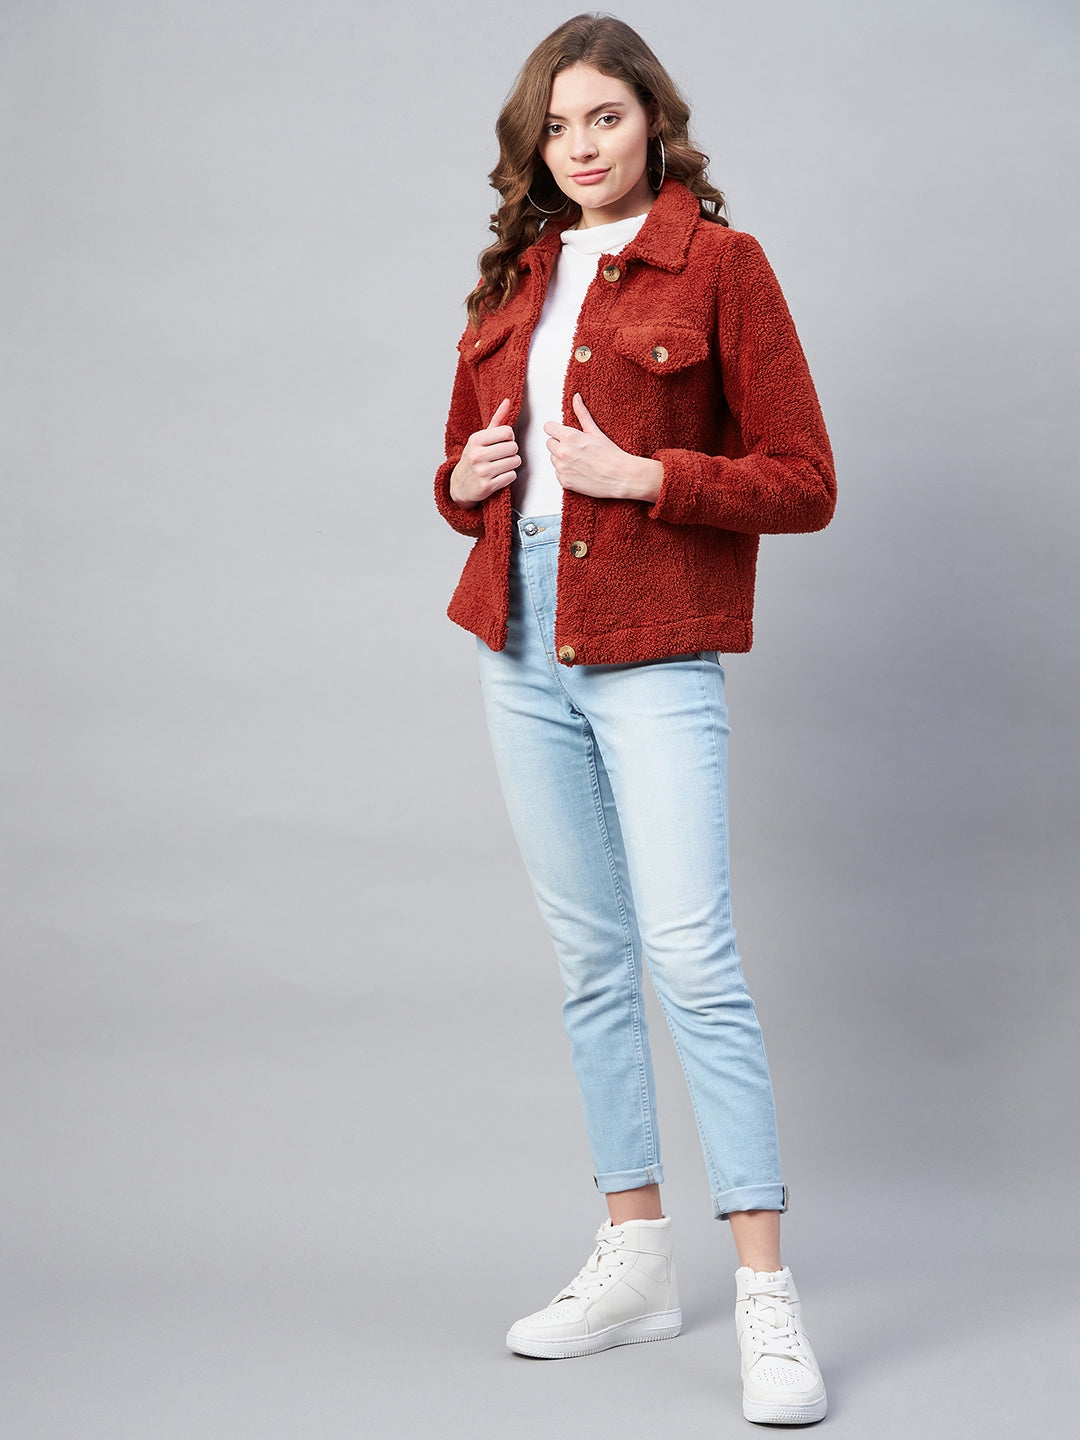 StyleStone Women's Red Fleece Casual Winter Jacket